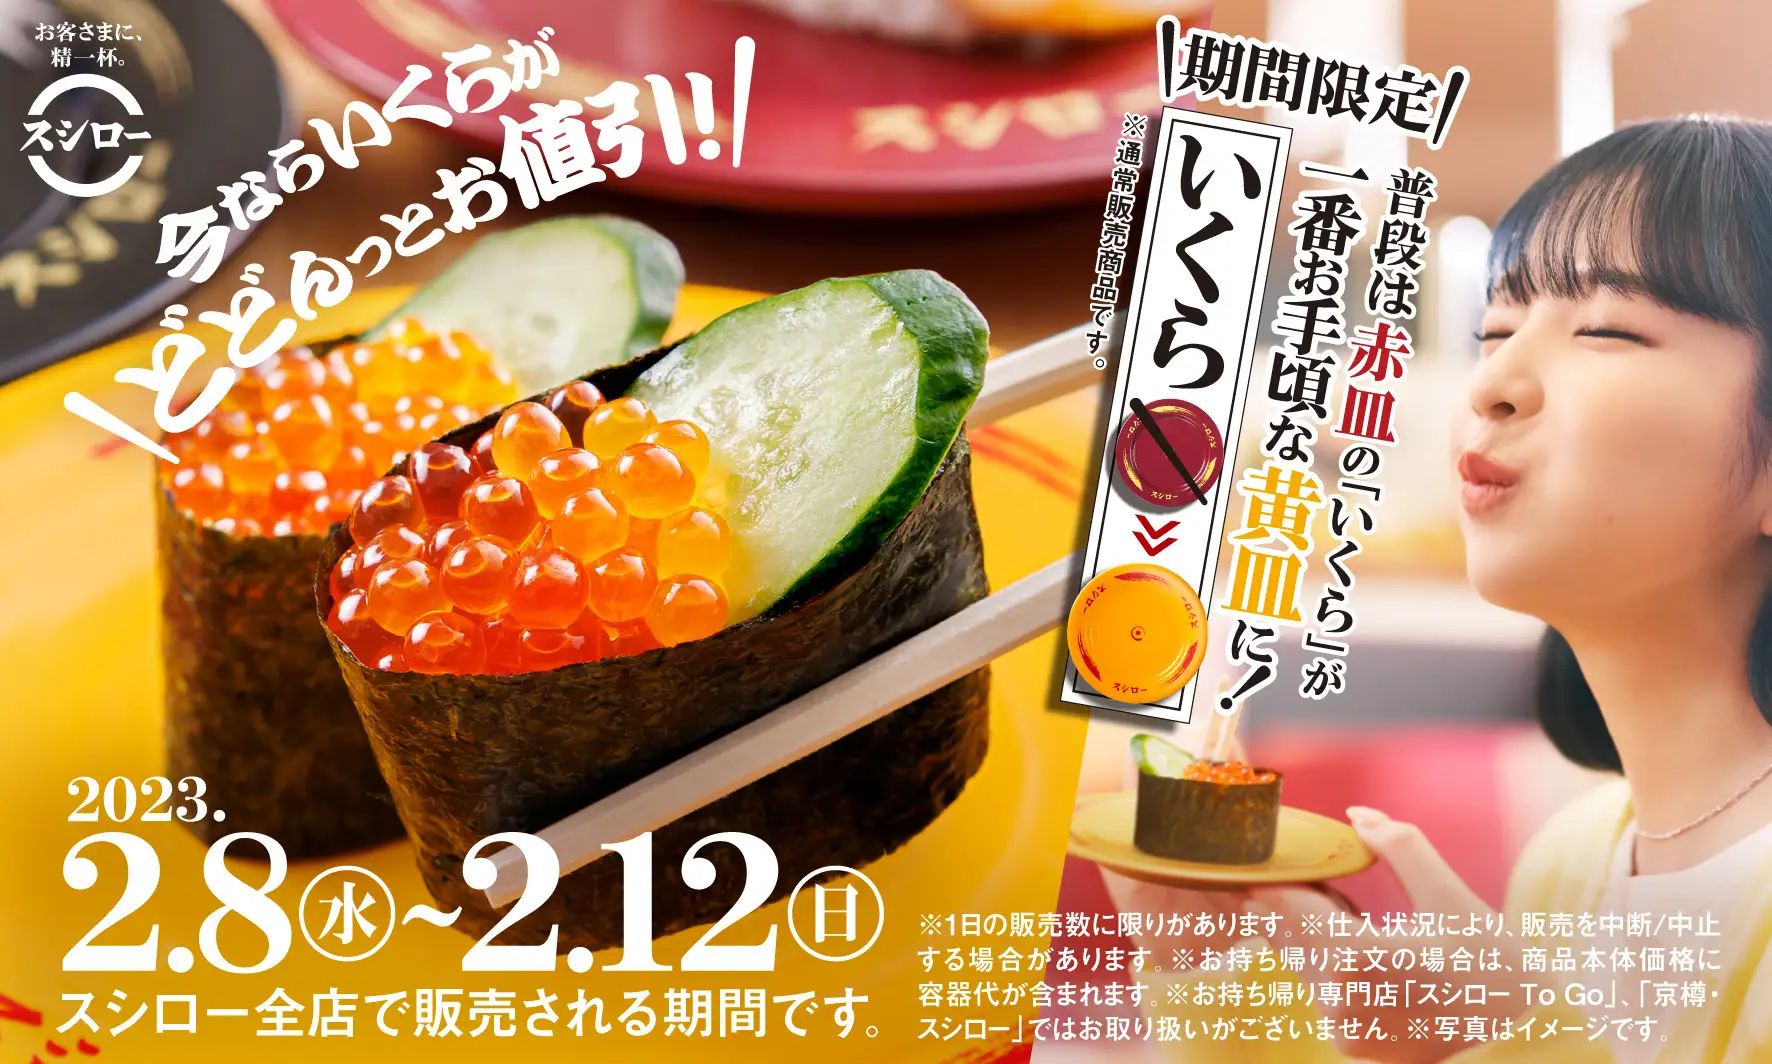 スシロー「いくら」120円“黄皿”キャンペーン